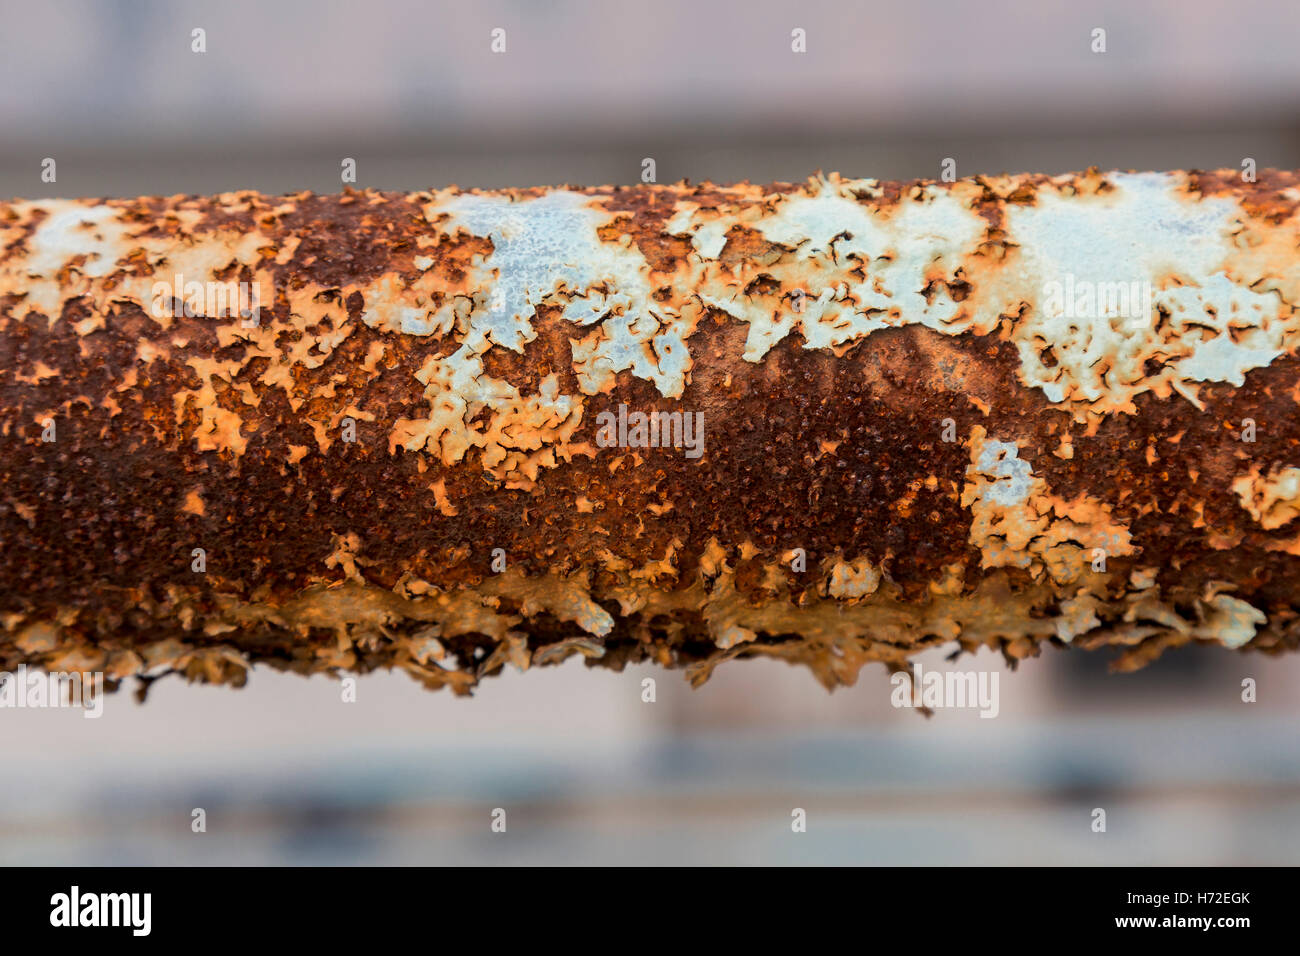 Rusty metal pipe. Stock Photo